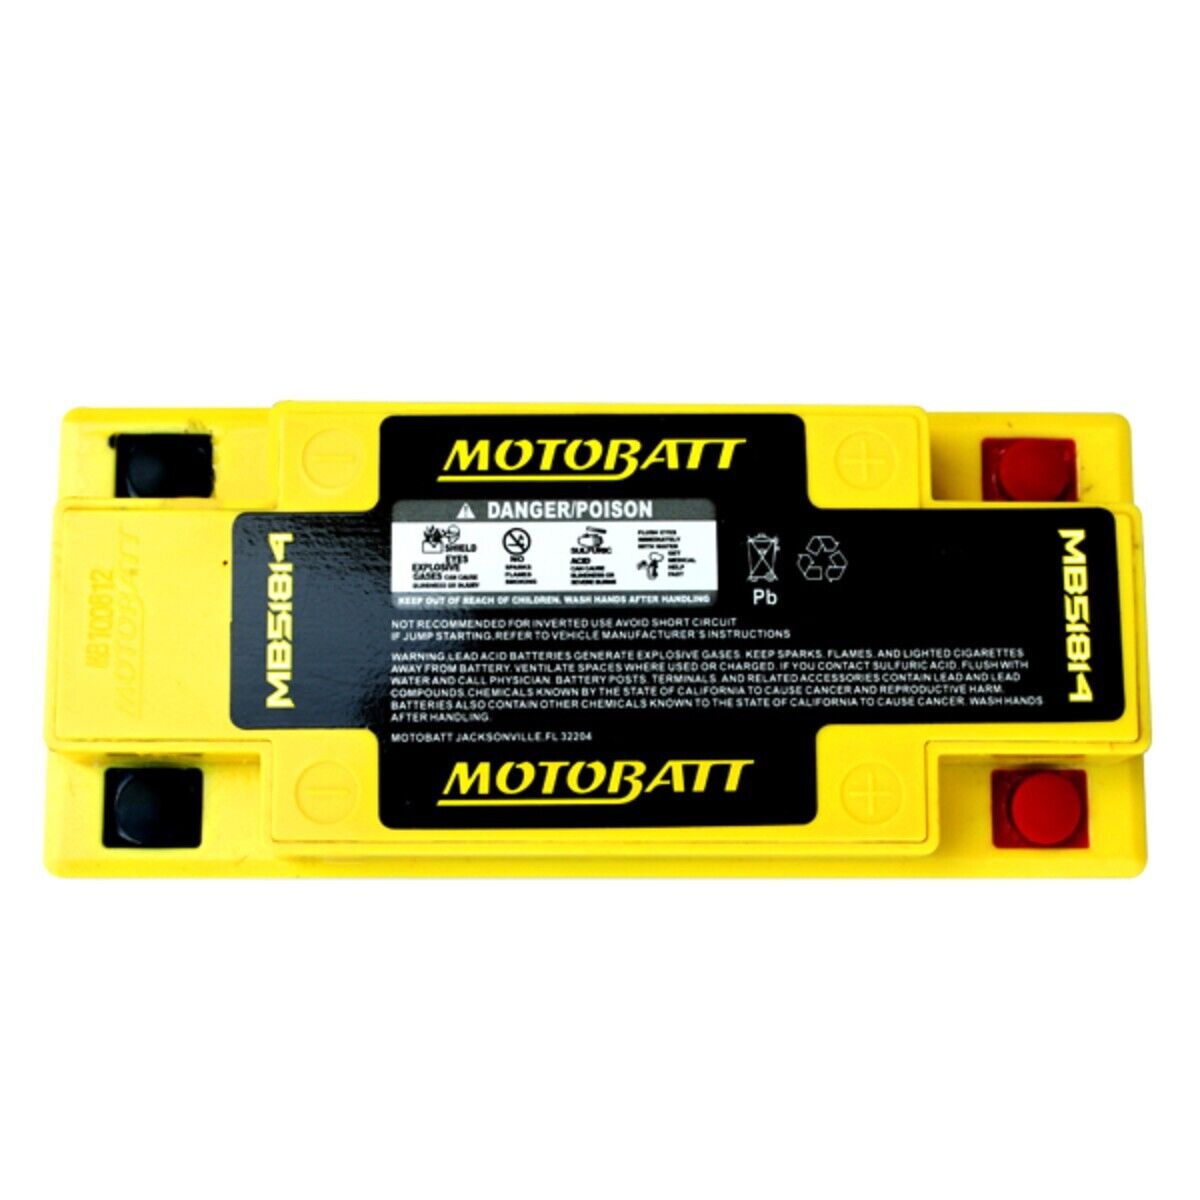 ✅ ✅ New MB51814 Motobatt 12V AGM Battery - Fast FreeShip✅ ✅